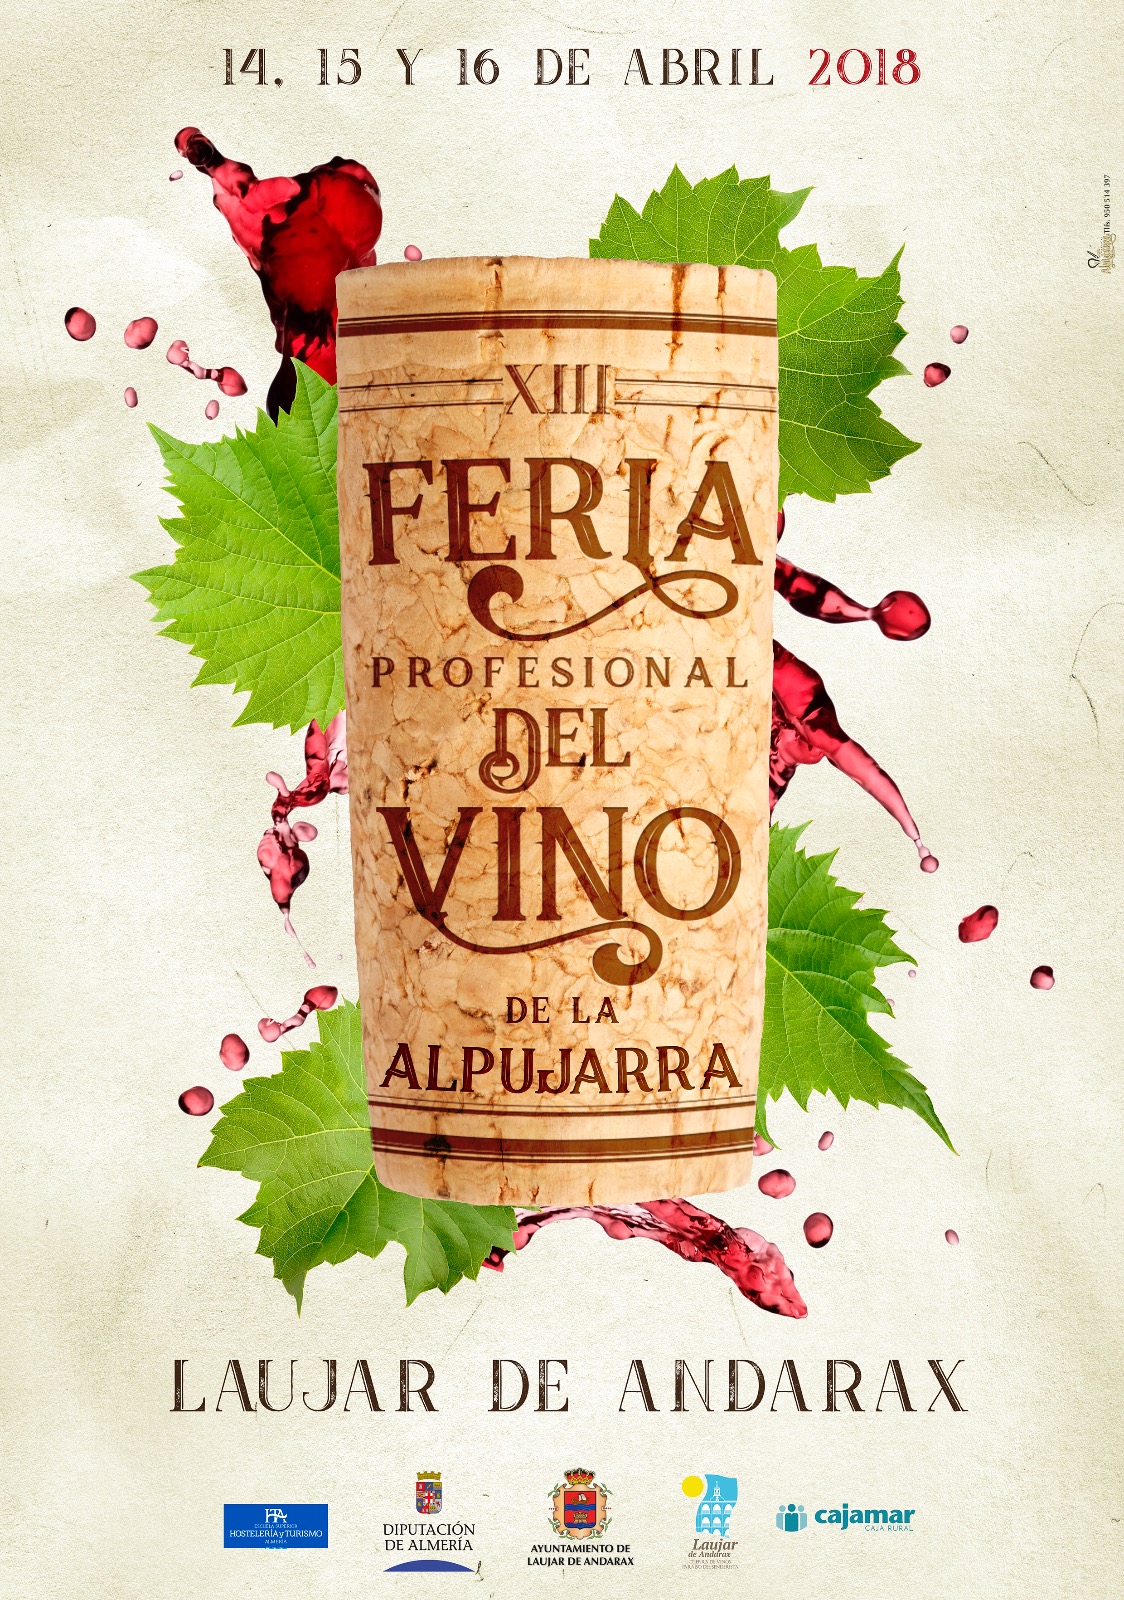 Cartel publicitario XIII Feria del Vino en Laujar 2018